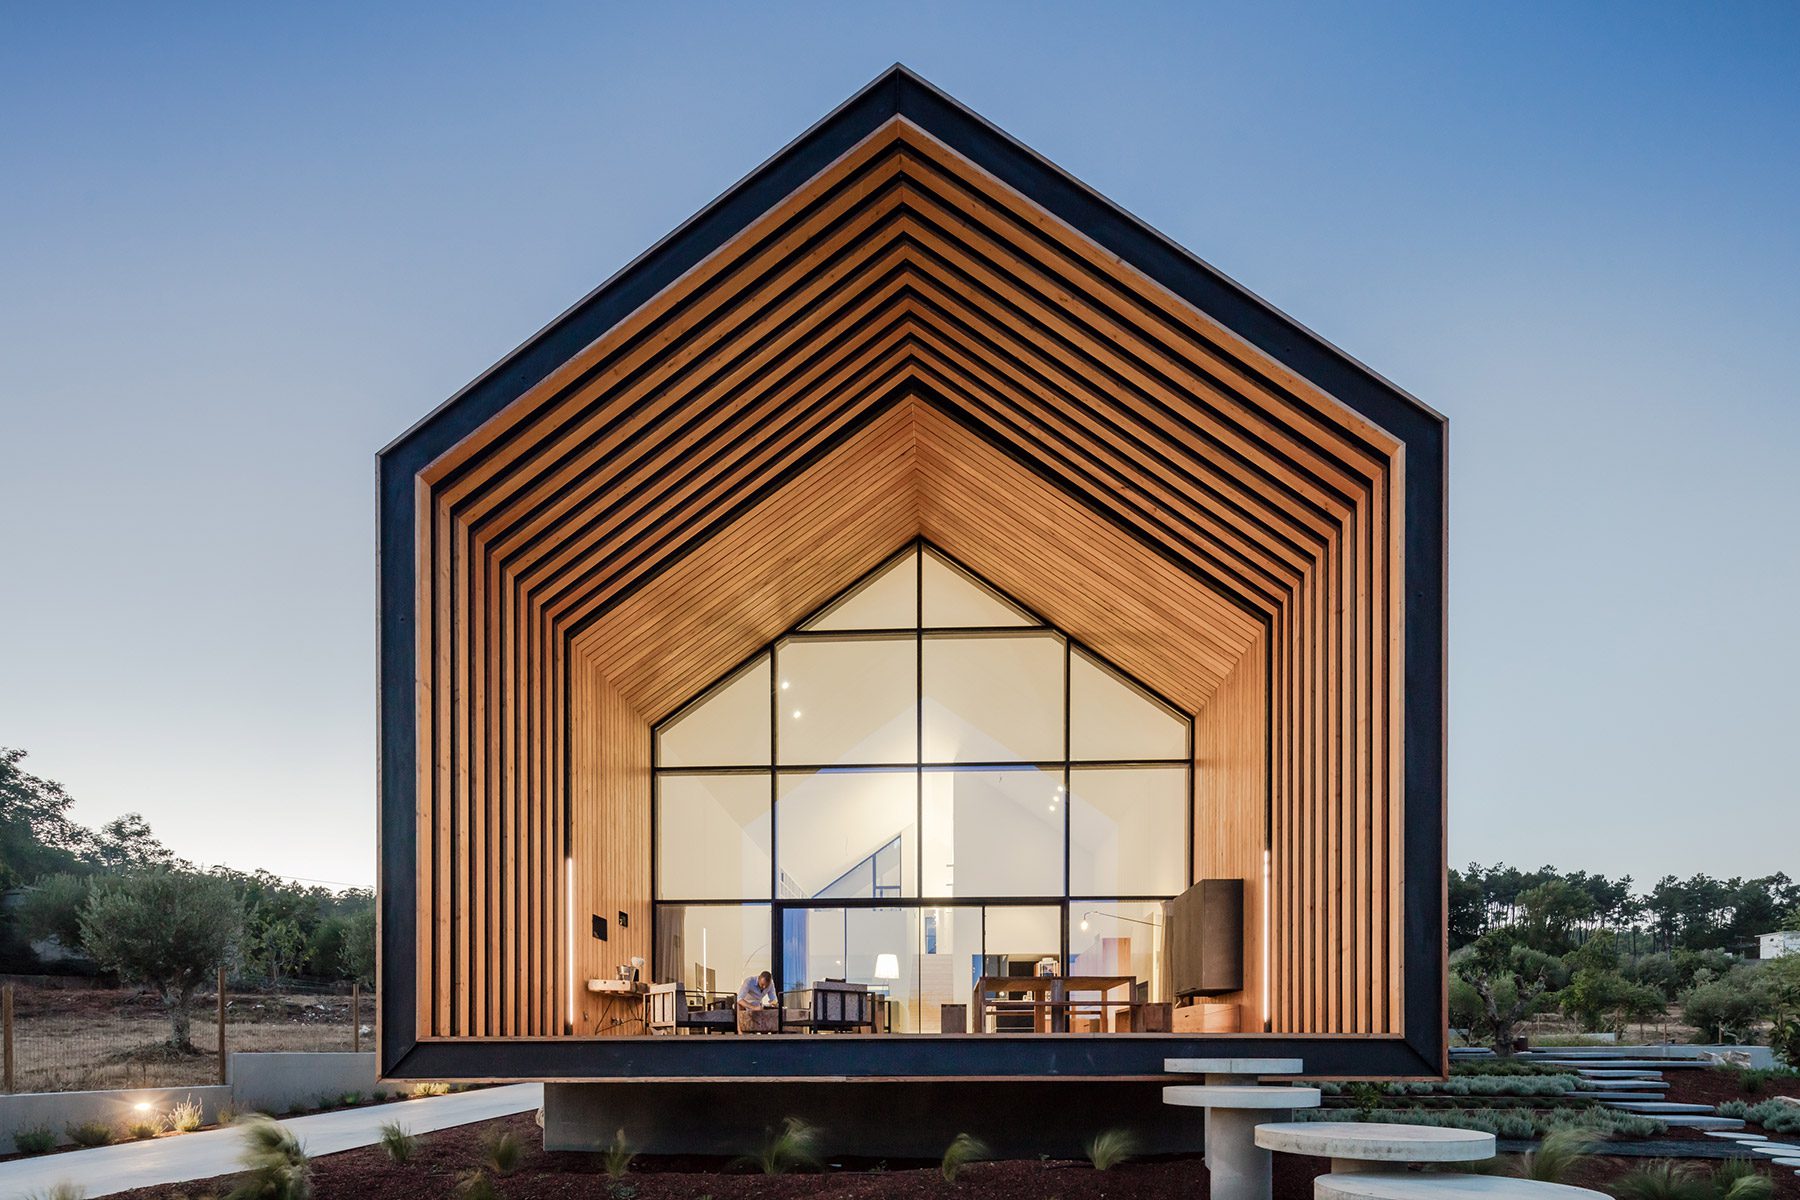 El arquitecto Filipe Saraiva diseña para él y su familia una original casa minimalista en Ourén, Portugal